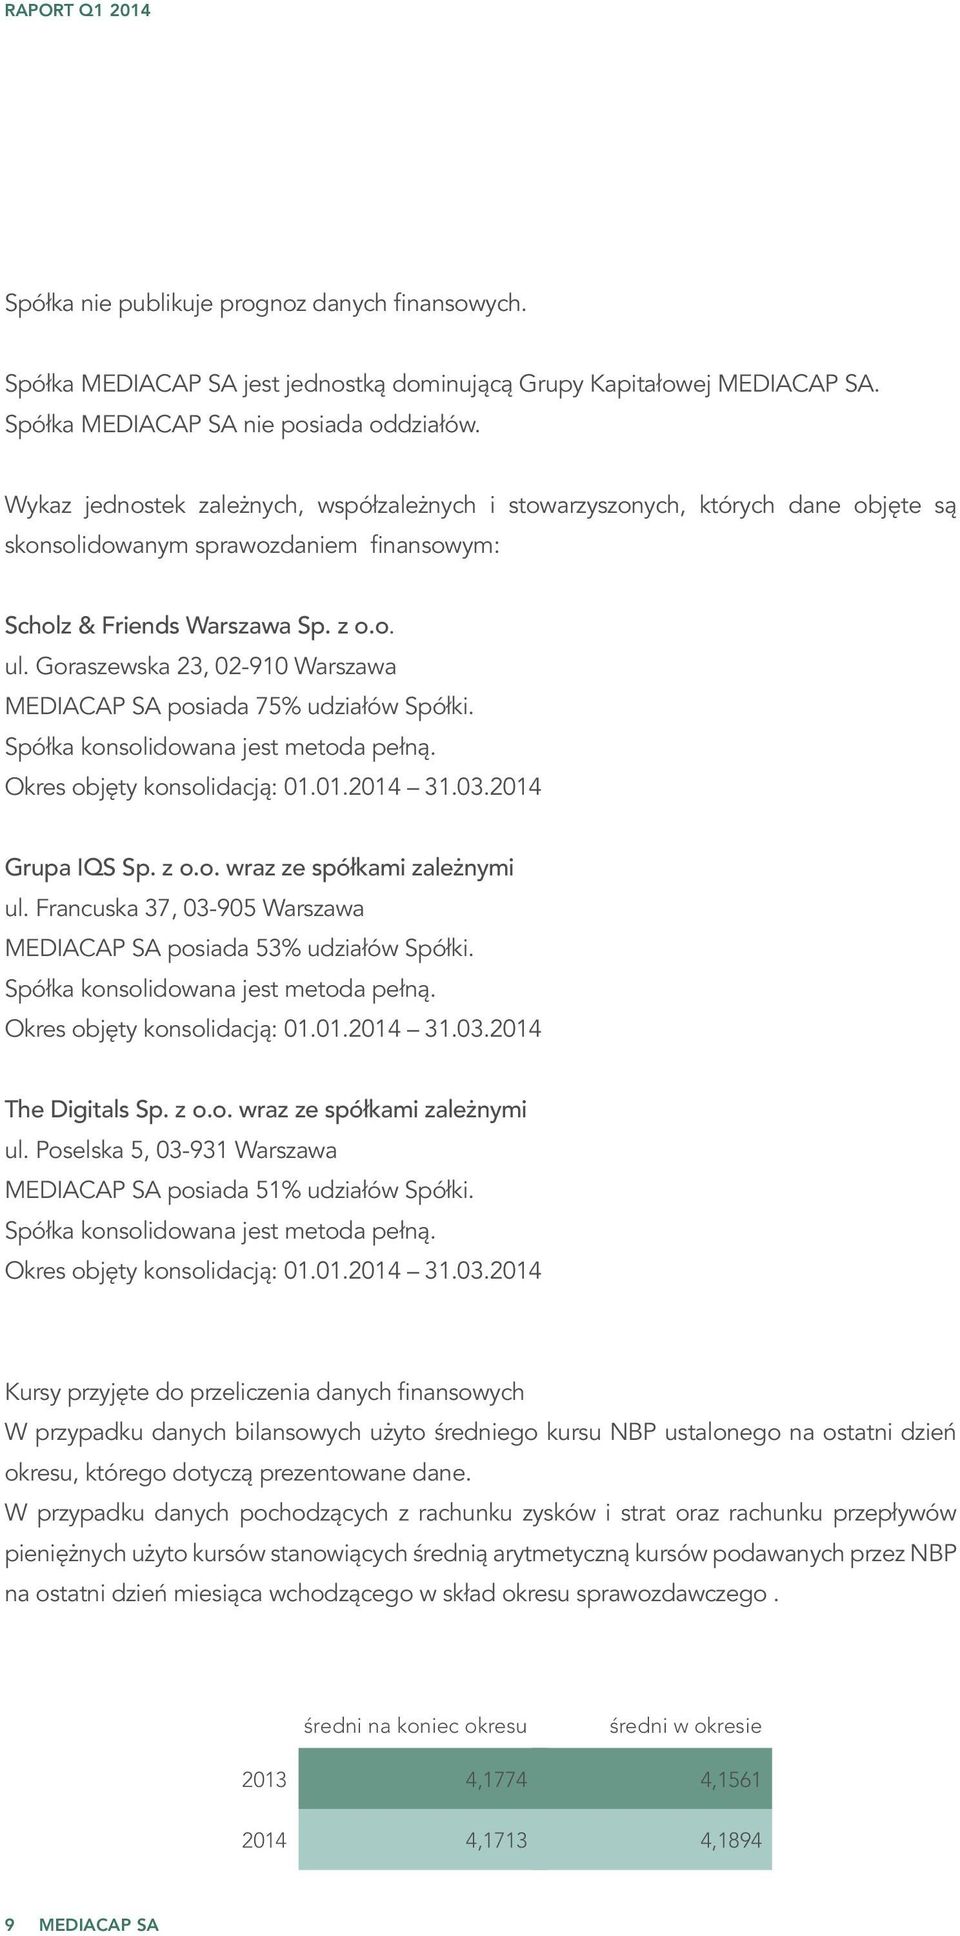 Goraszewska 23, 02-910 Warszawa MEDIACAP SA posiada 75% udziałów Spółki. Spółka konsolidowana jest metoda pełną. Okres objęty konsolidacją: 01.01.2014 31.03.2014 Grupa IQS Sp. z o.o. wraz ze spółkami zależnymi ul.